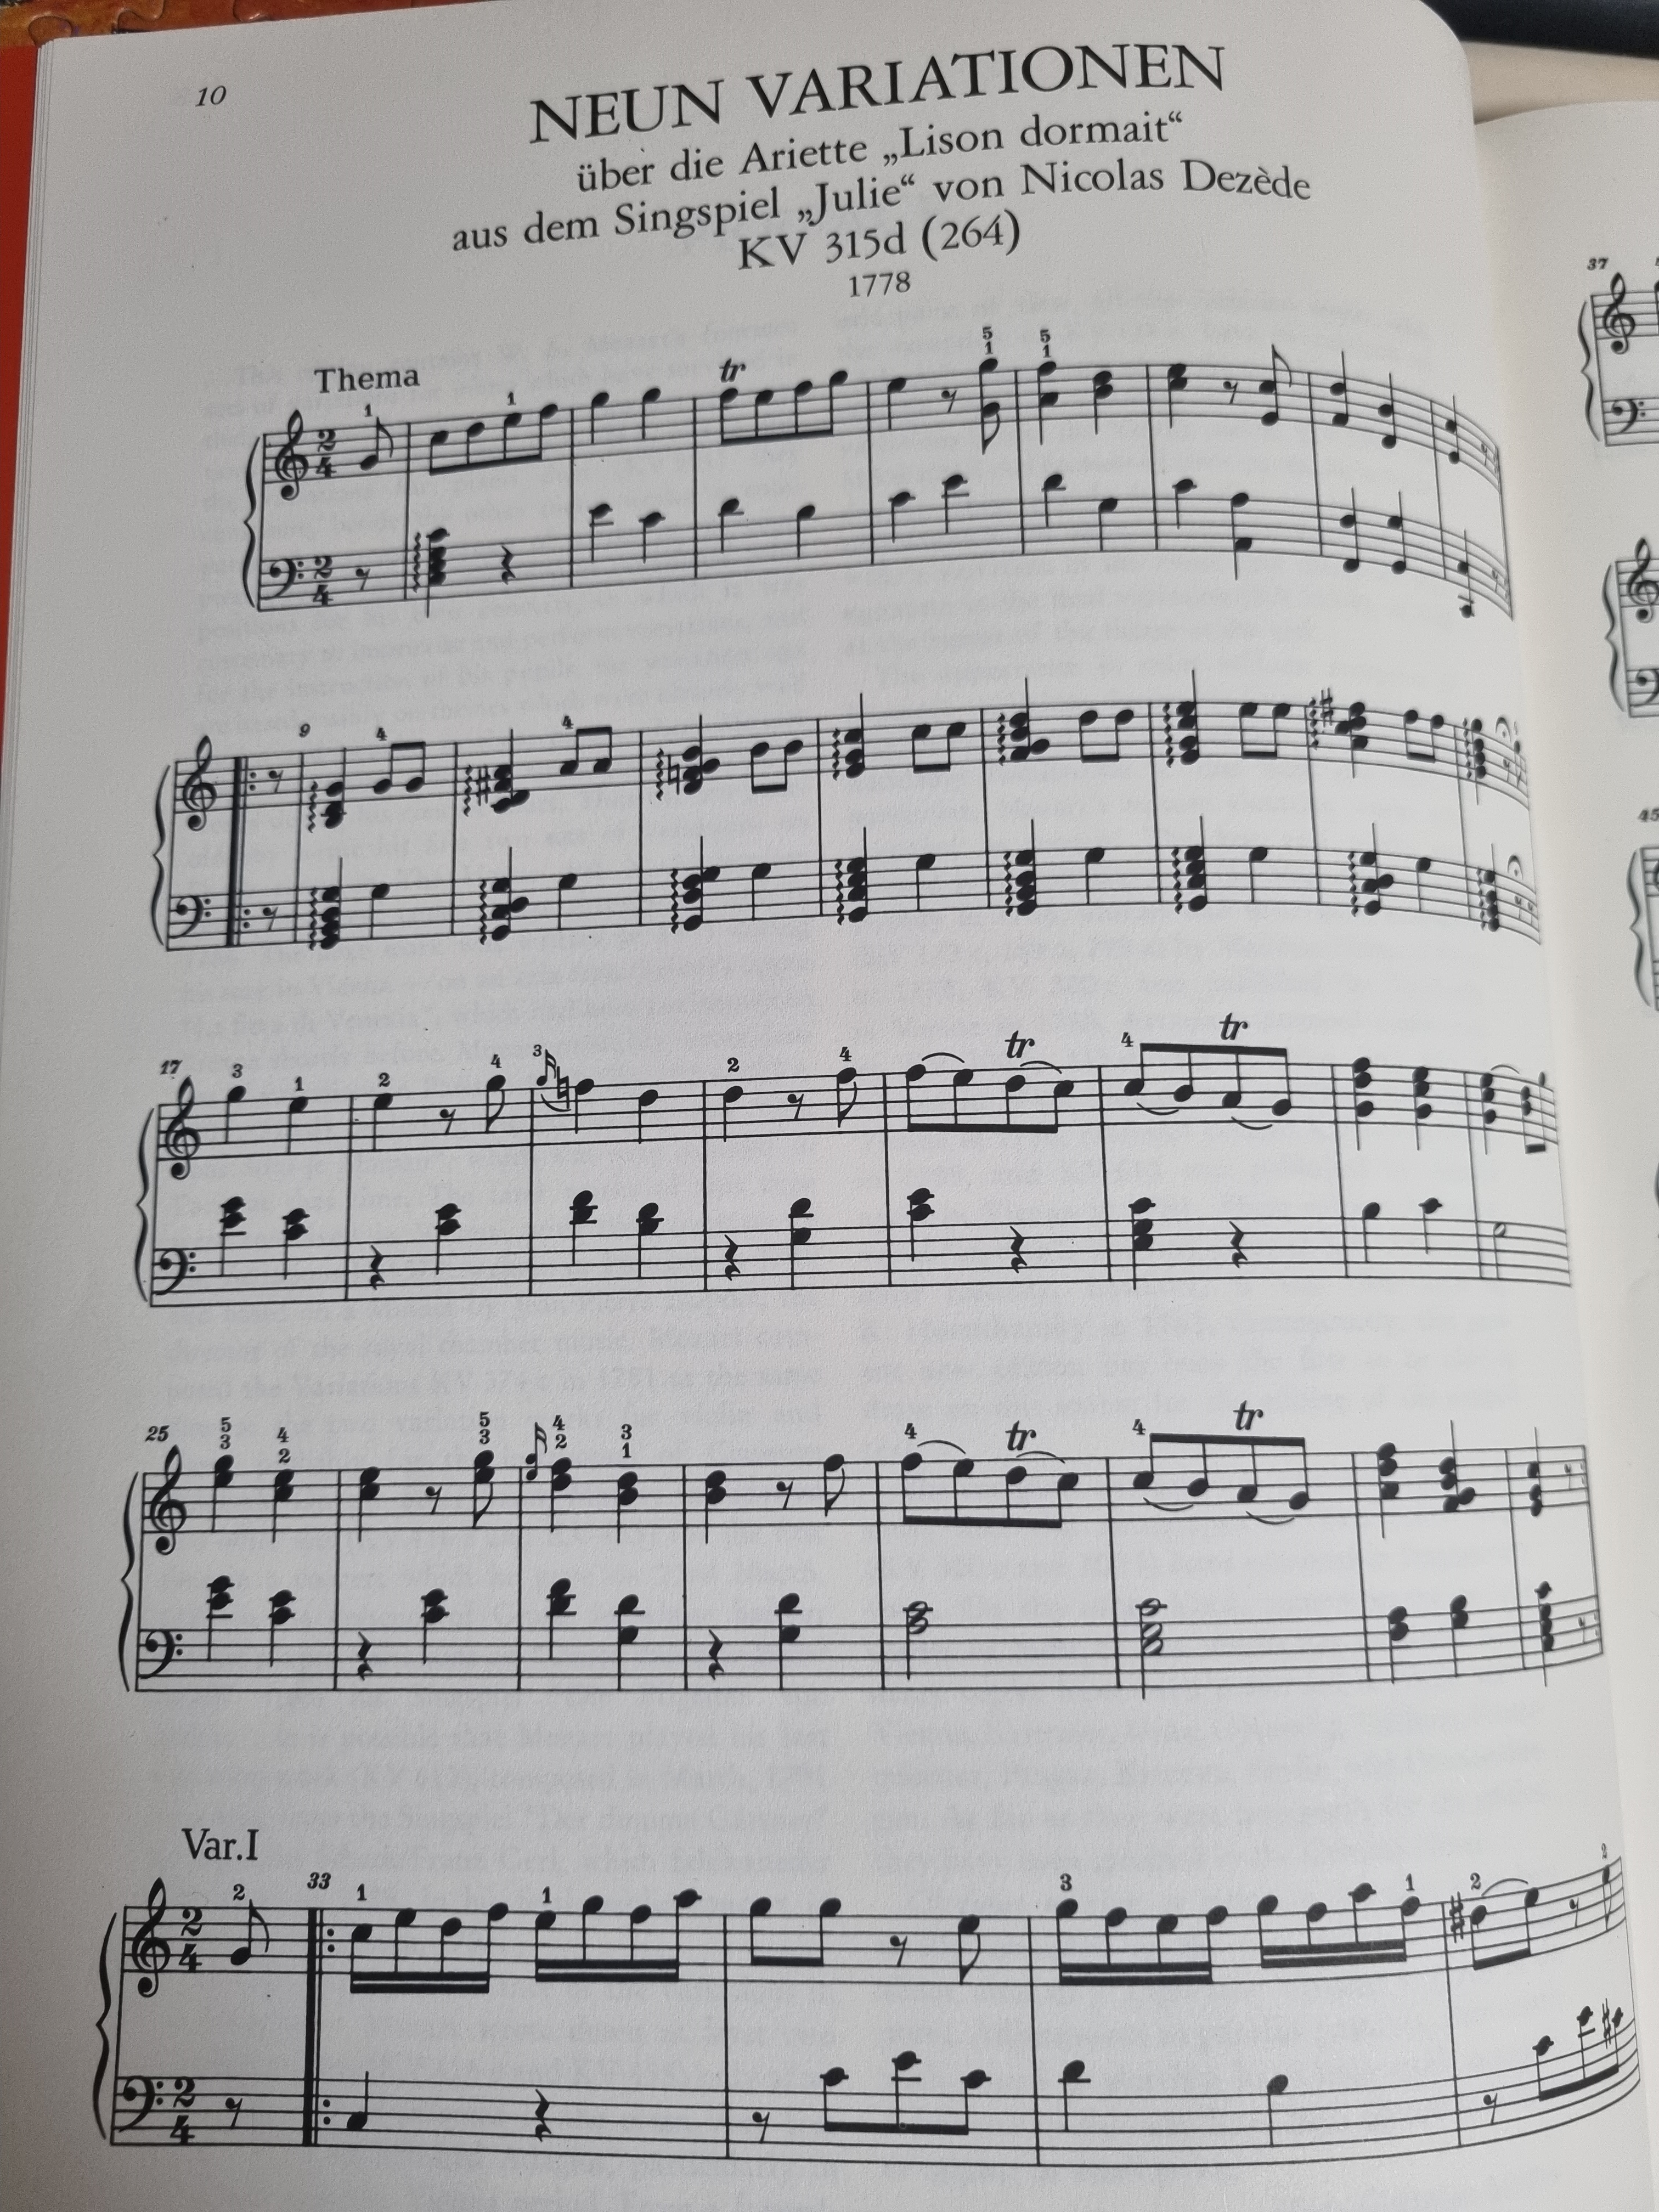 모차르트 변주곡 KV 315(264) 니콜라 드제드의 가극 [쥘리]중의 아리에타 